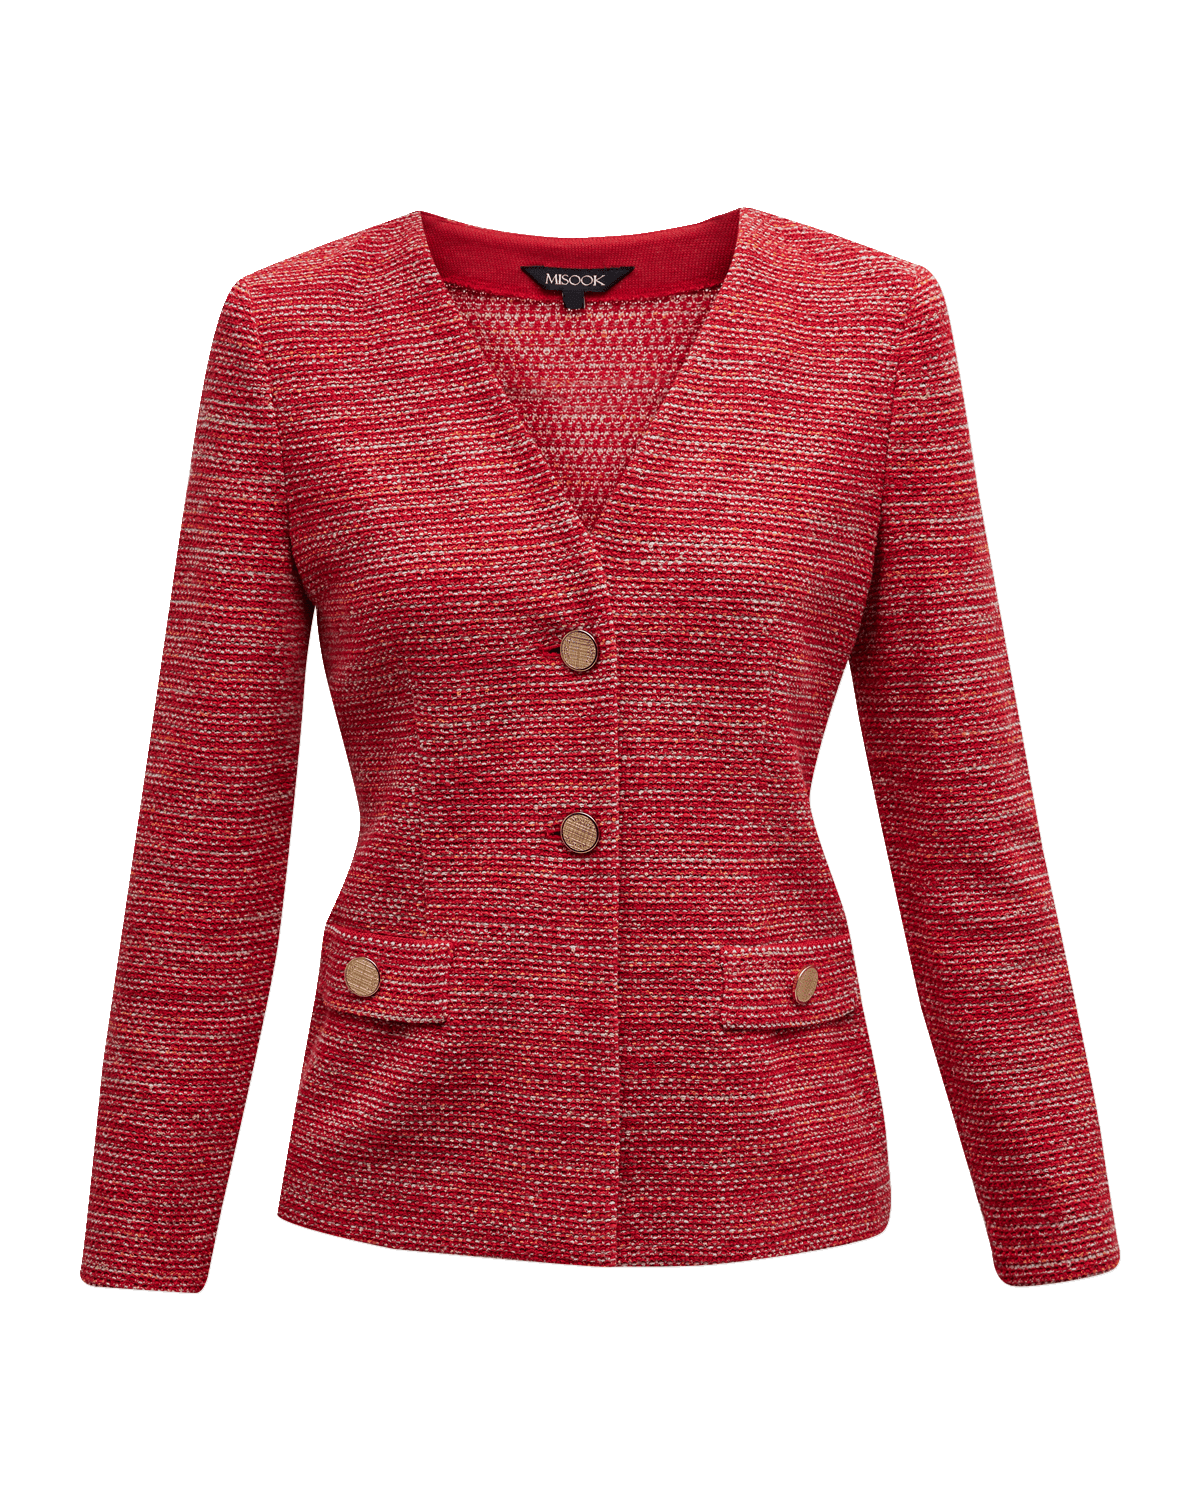 Misook Eyelash Tweed Plaid Knit Jacket